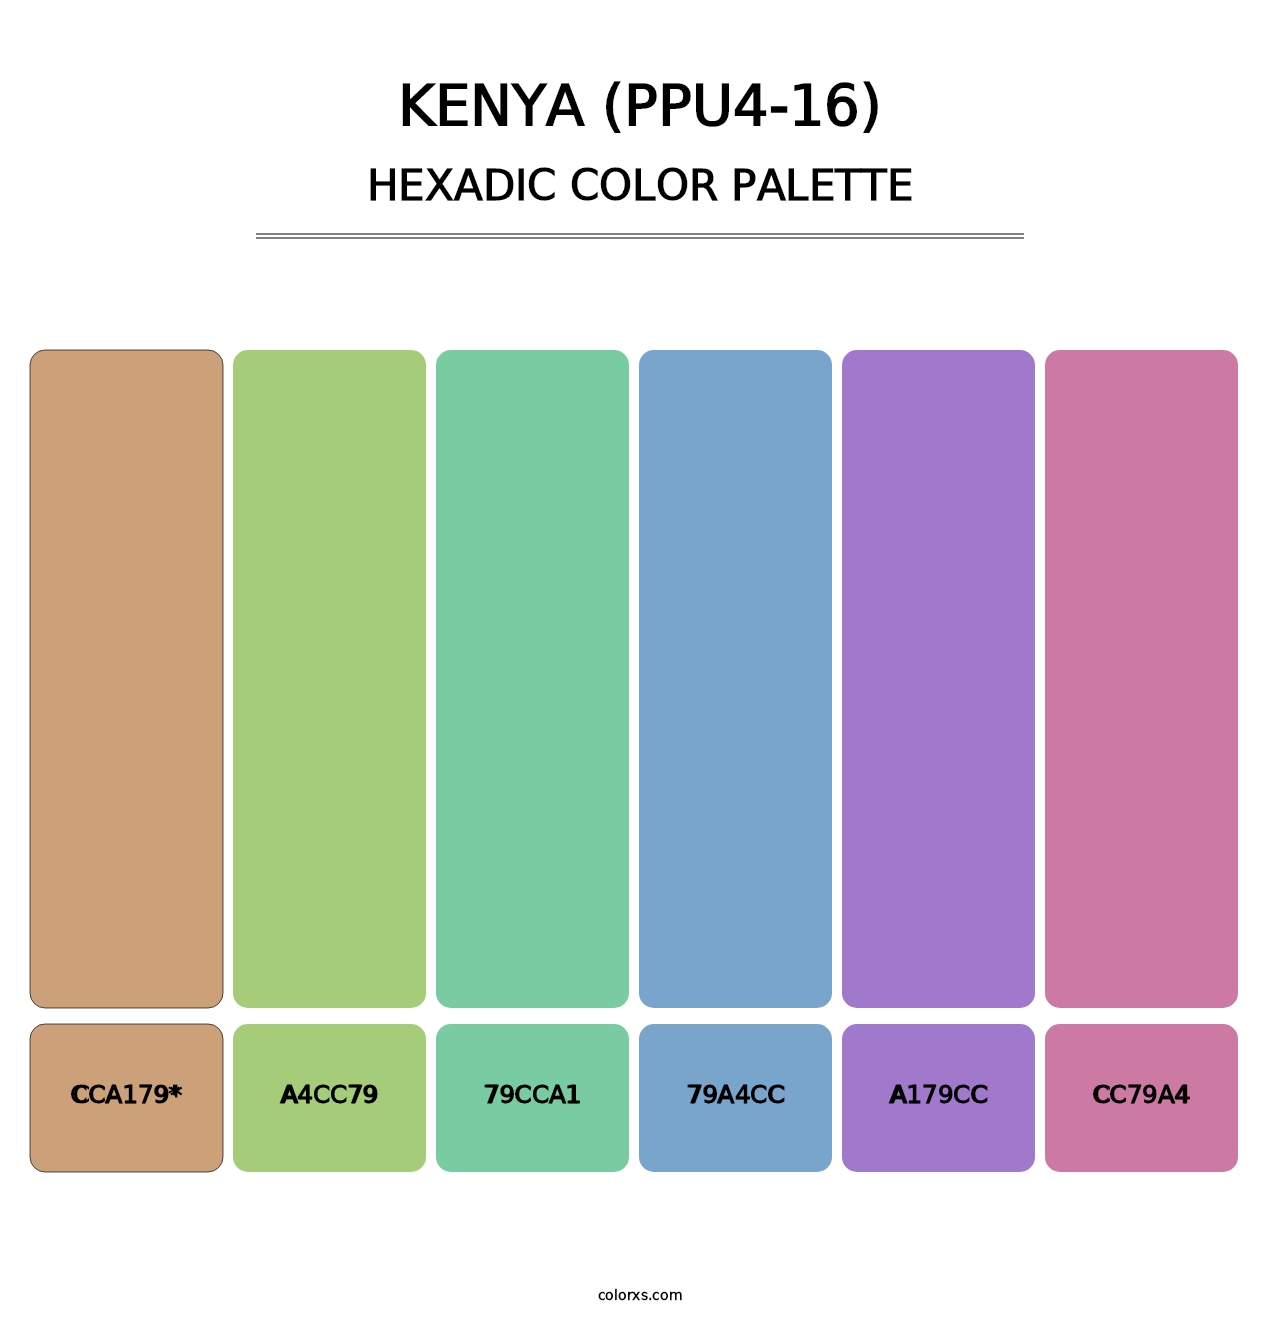 Kenya (PPU4-16) - Hexadic Color Palette